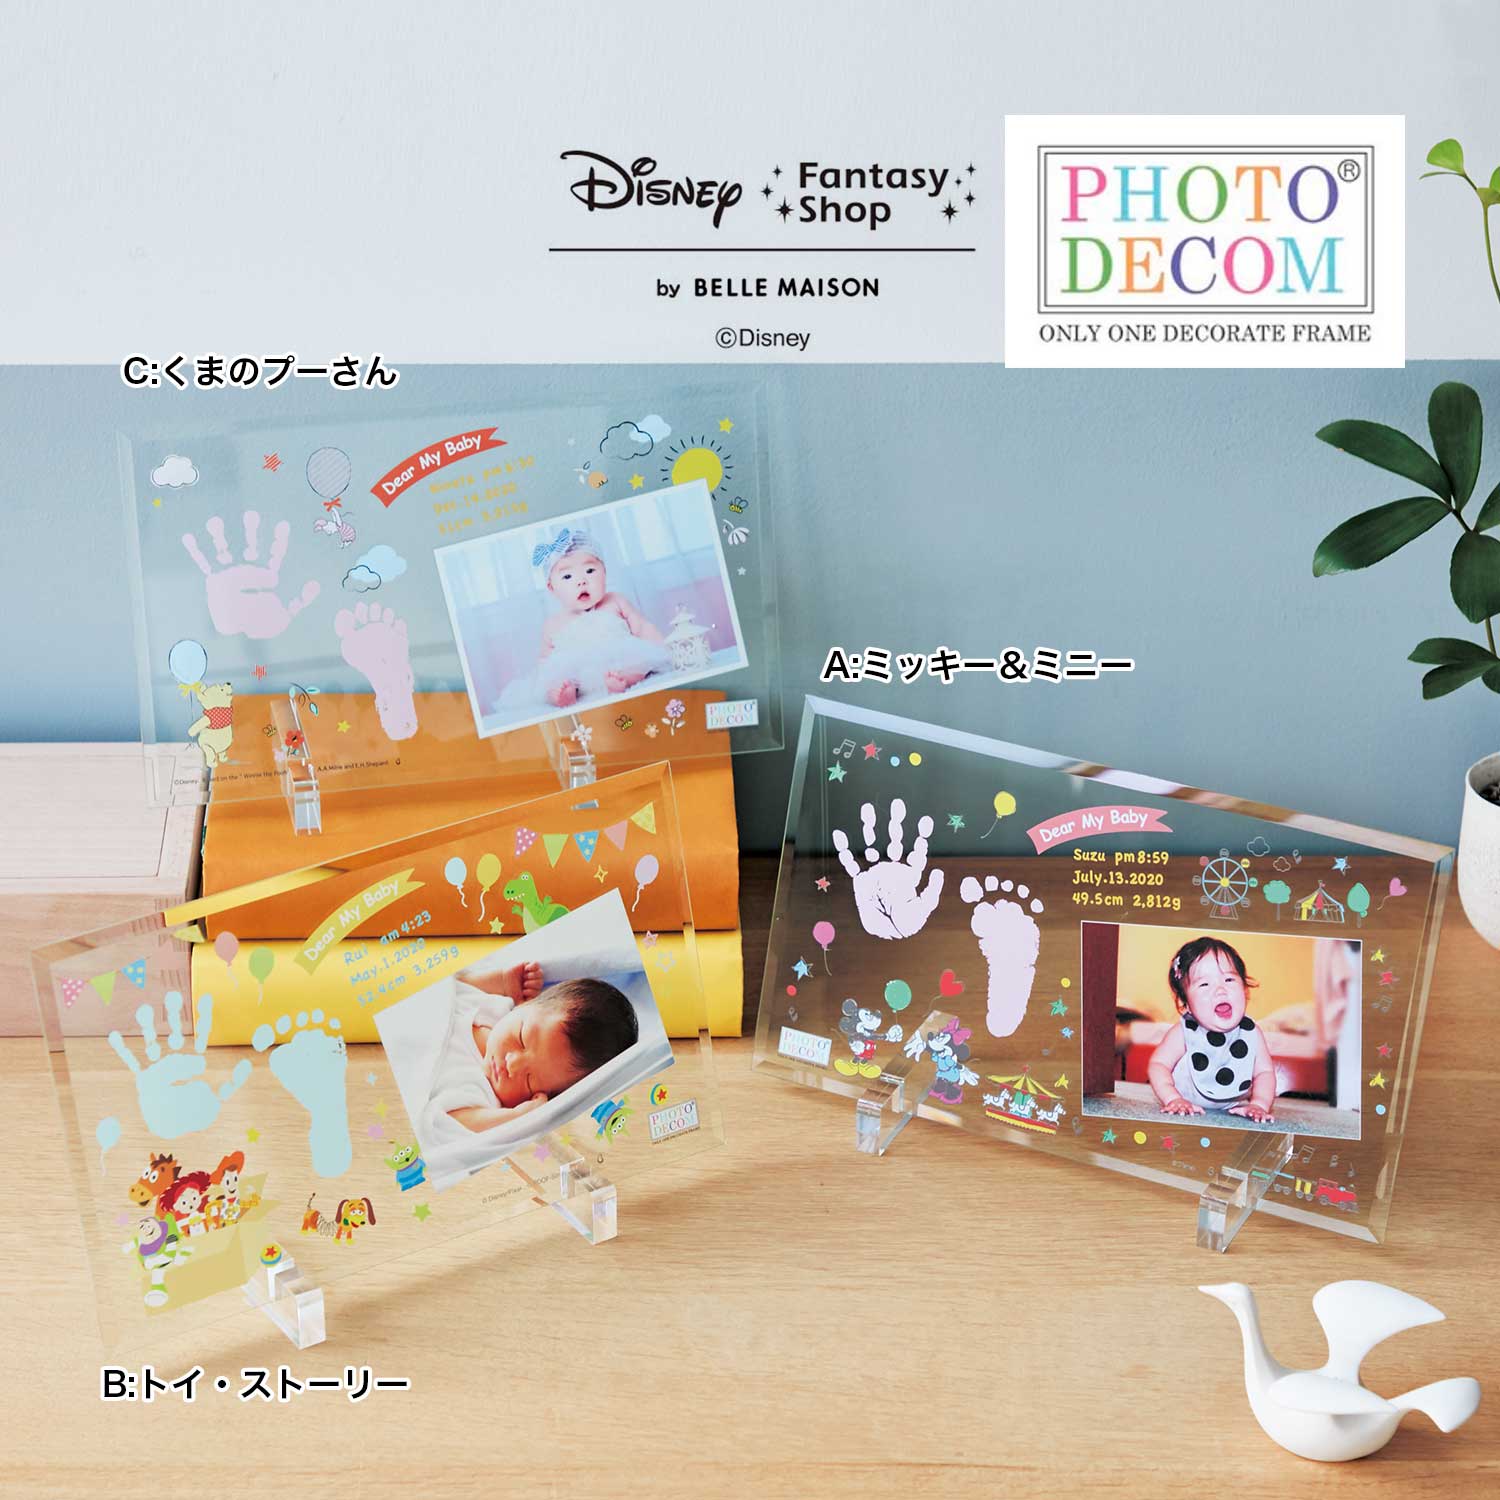 【ディズニー/Disney】【送料無料】 ディズニー フォトデコム・クリアガラス手形足形メモリアルお仕立券